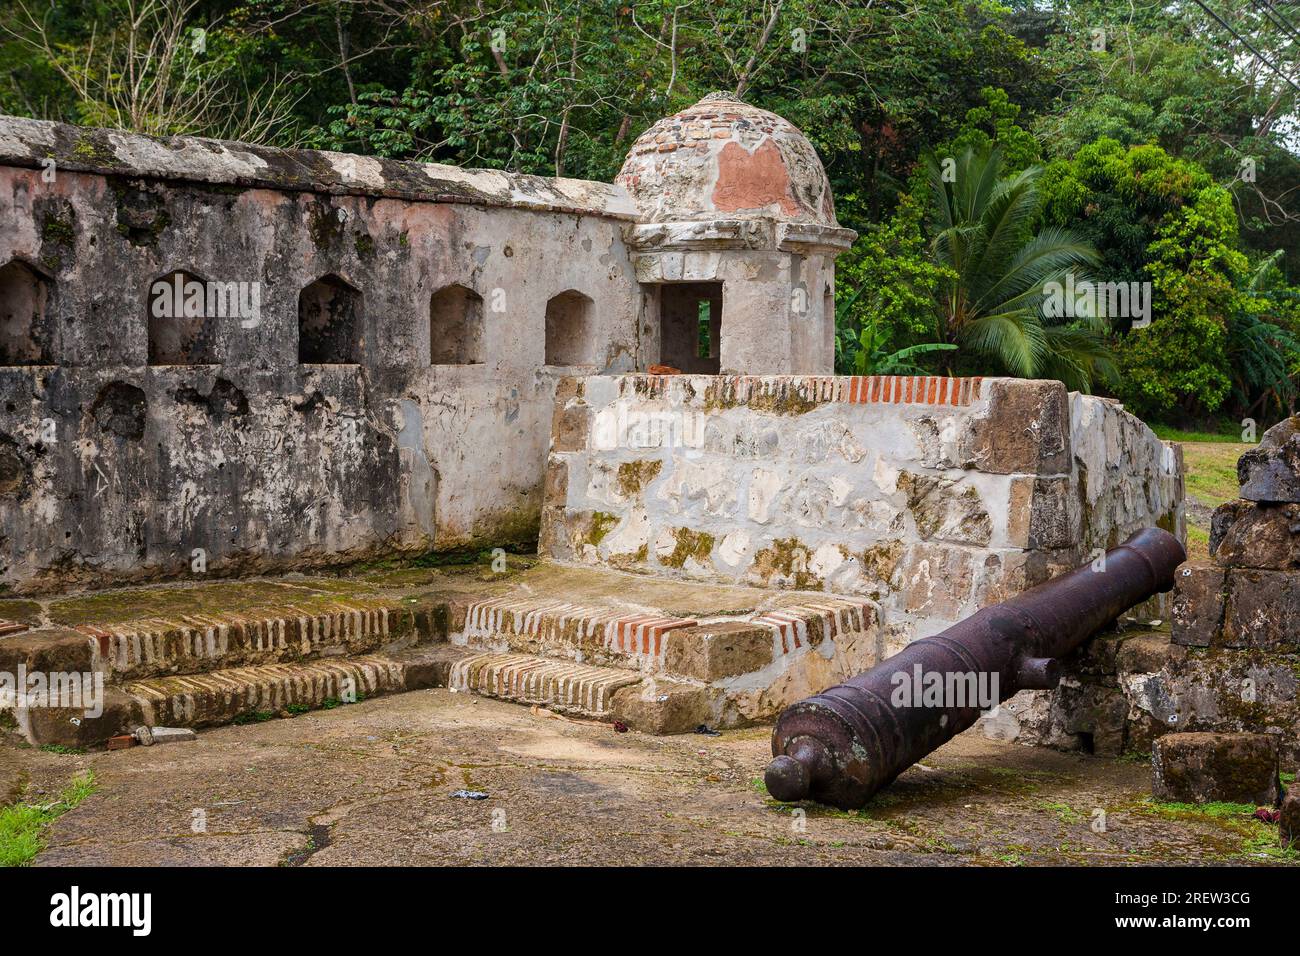 Cannon at Fuerte Santiago fortress in the Portobelo village, Colon province, Republic of Panama, Central America Stock Photo